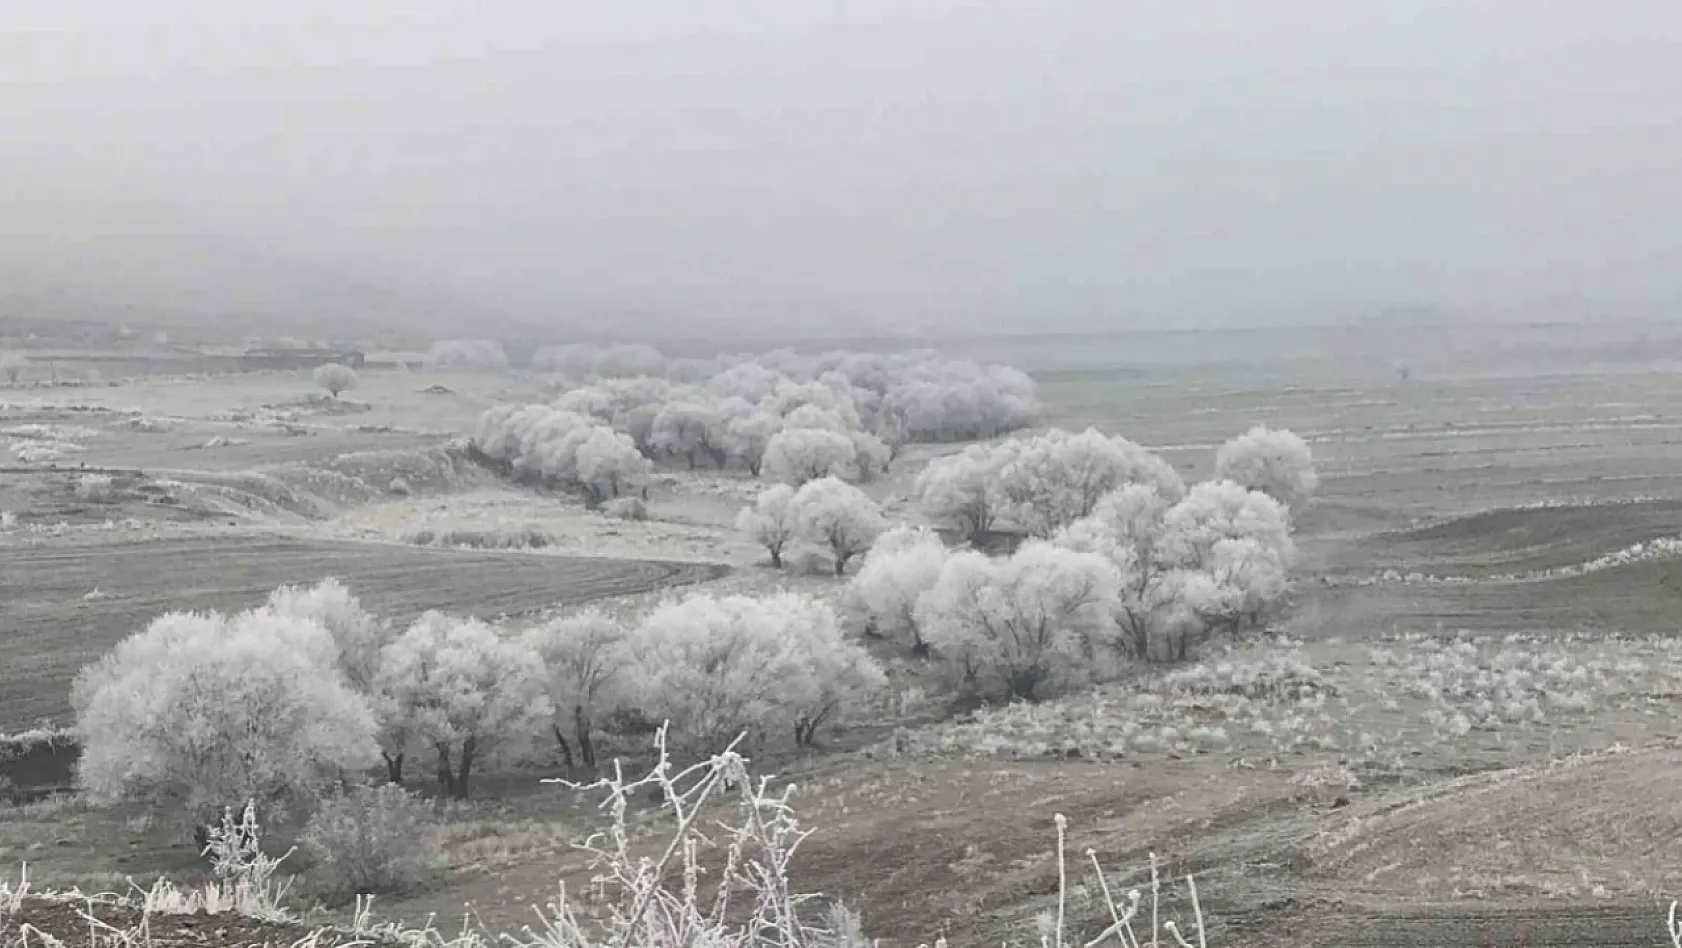 Elazığ'a Adeta Kar Yağmış Gibi...